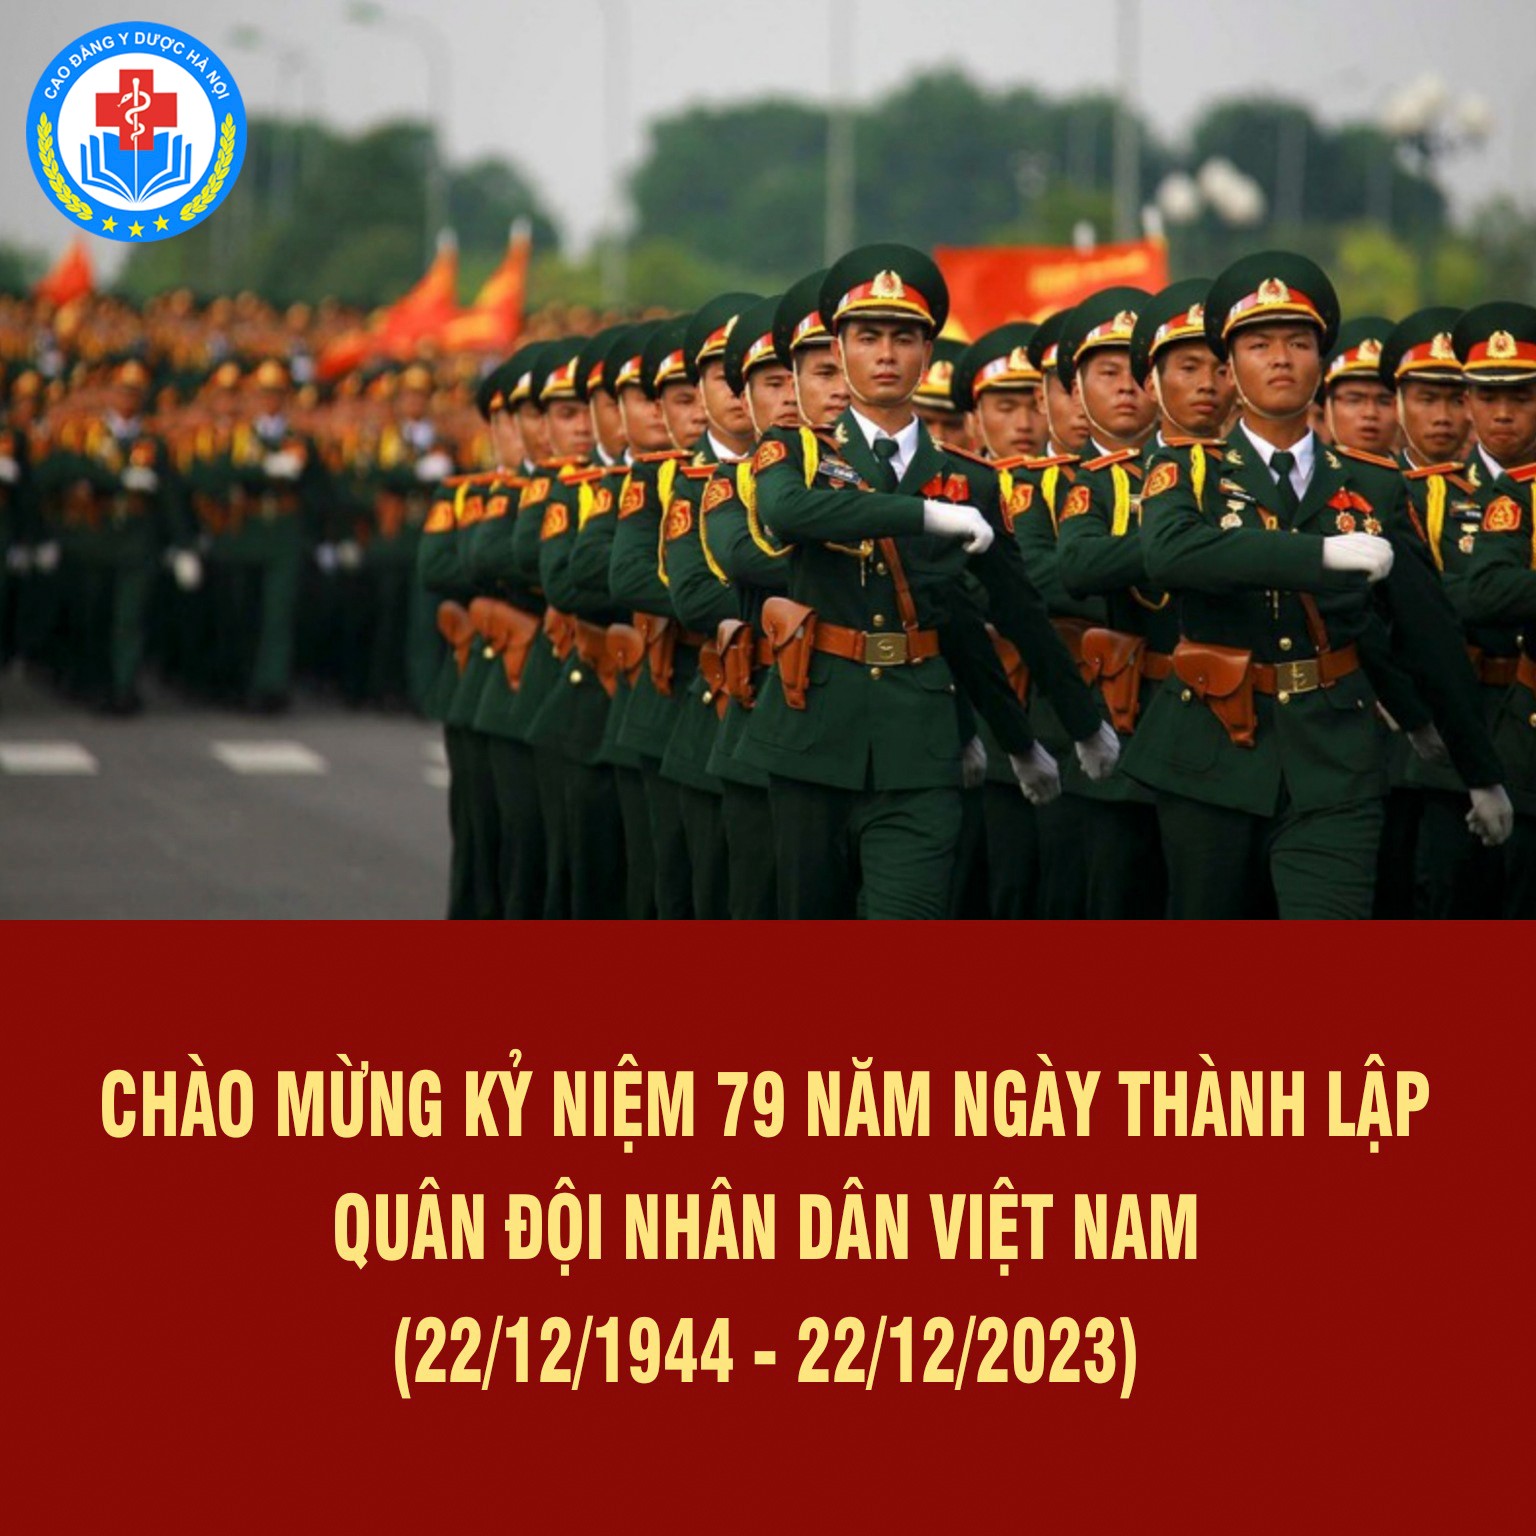 79 năm Ngày thành lập Quân đội Nhân dân Việt Nam (22/12/1944 – 22/12/2023) và 34 năm “Ngày hội Quốc phòng toàn dân” (22/12/1989 – 22/12/2023)